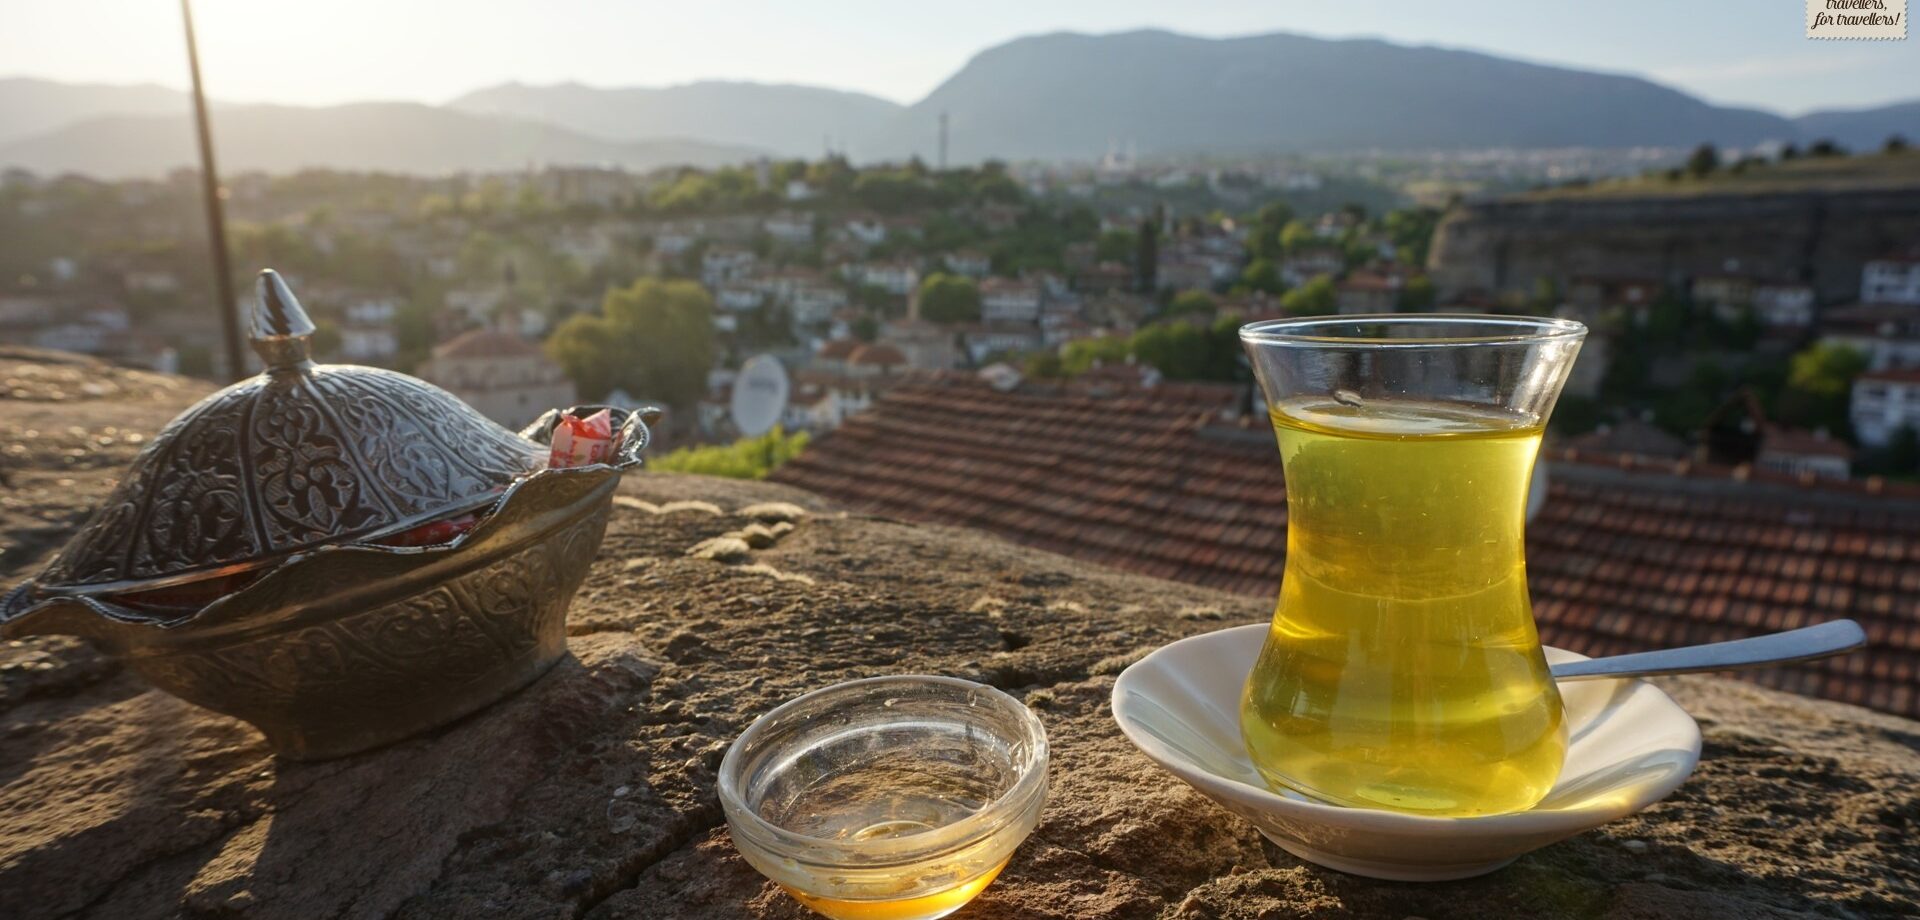 #01. Turkey, saffron flavoured tea at Safranbolu